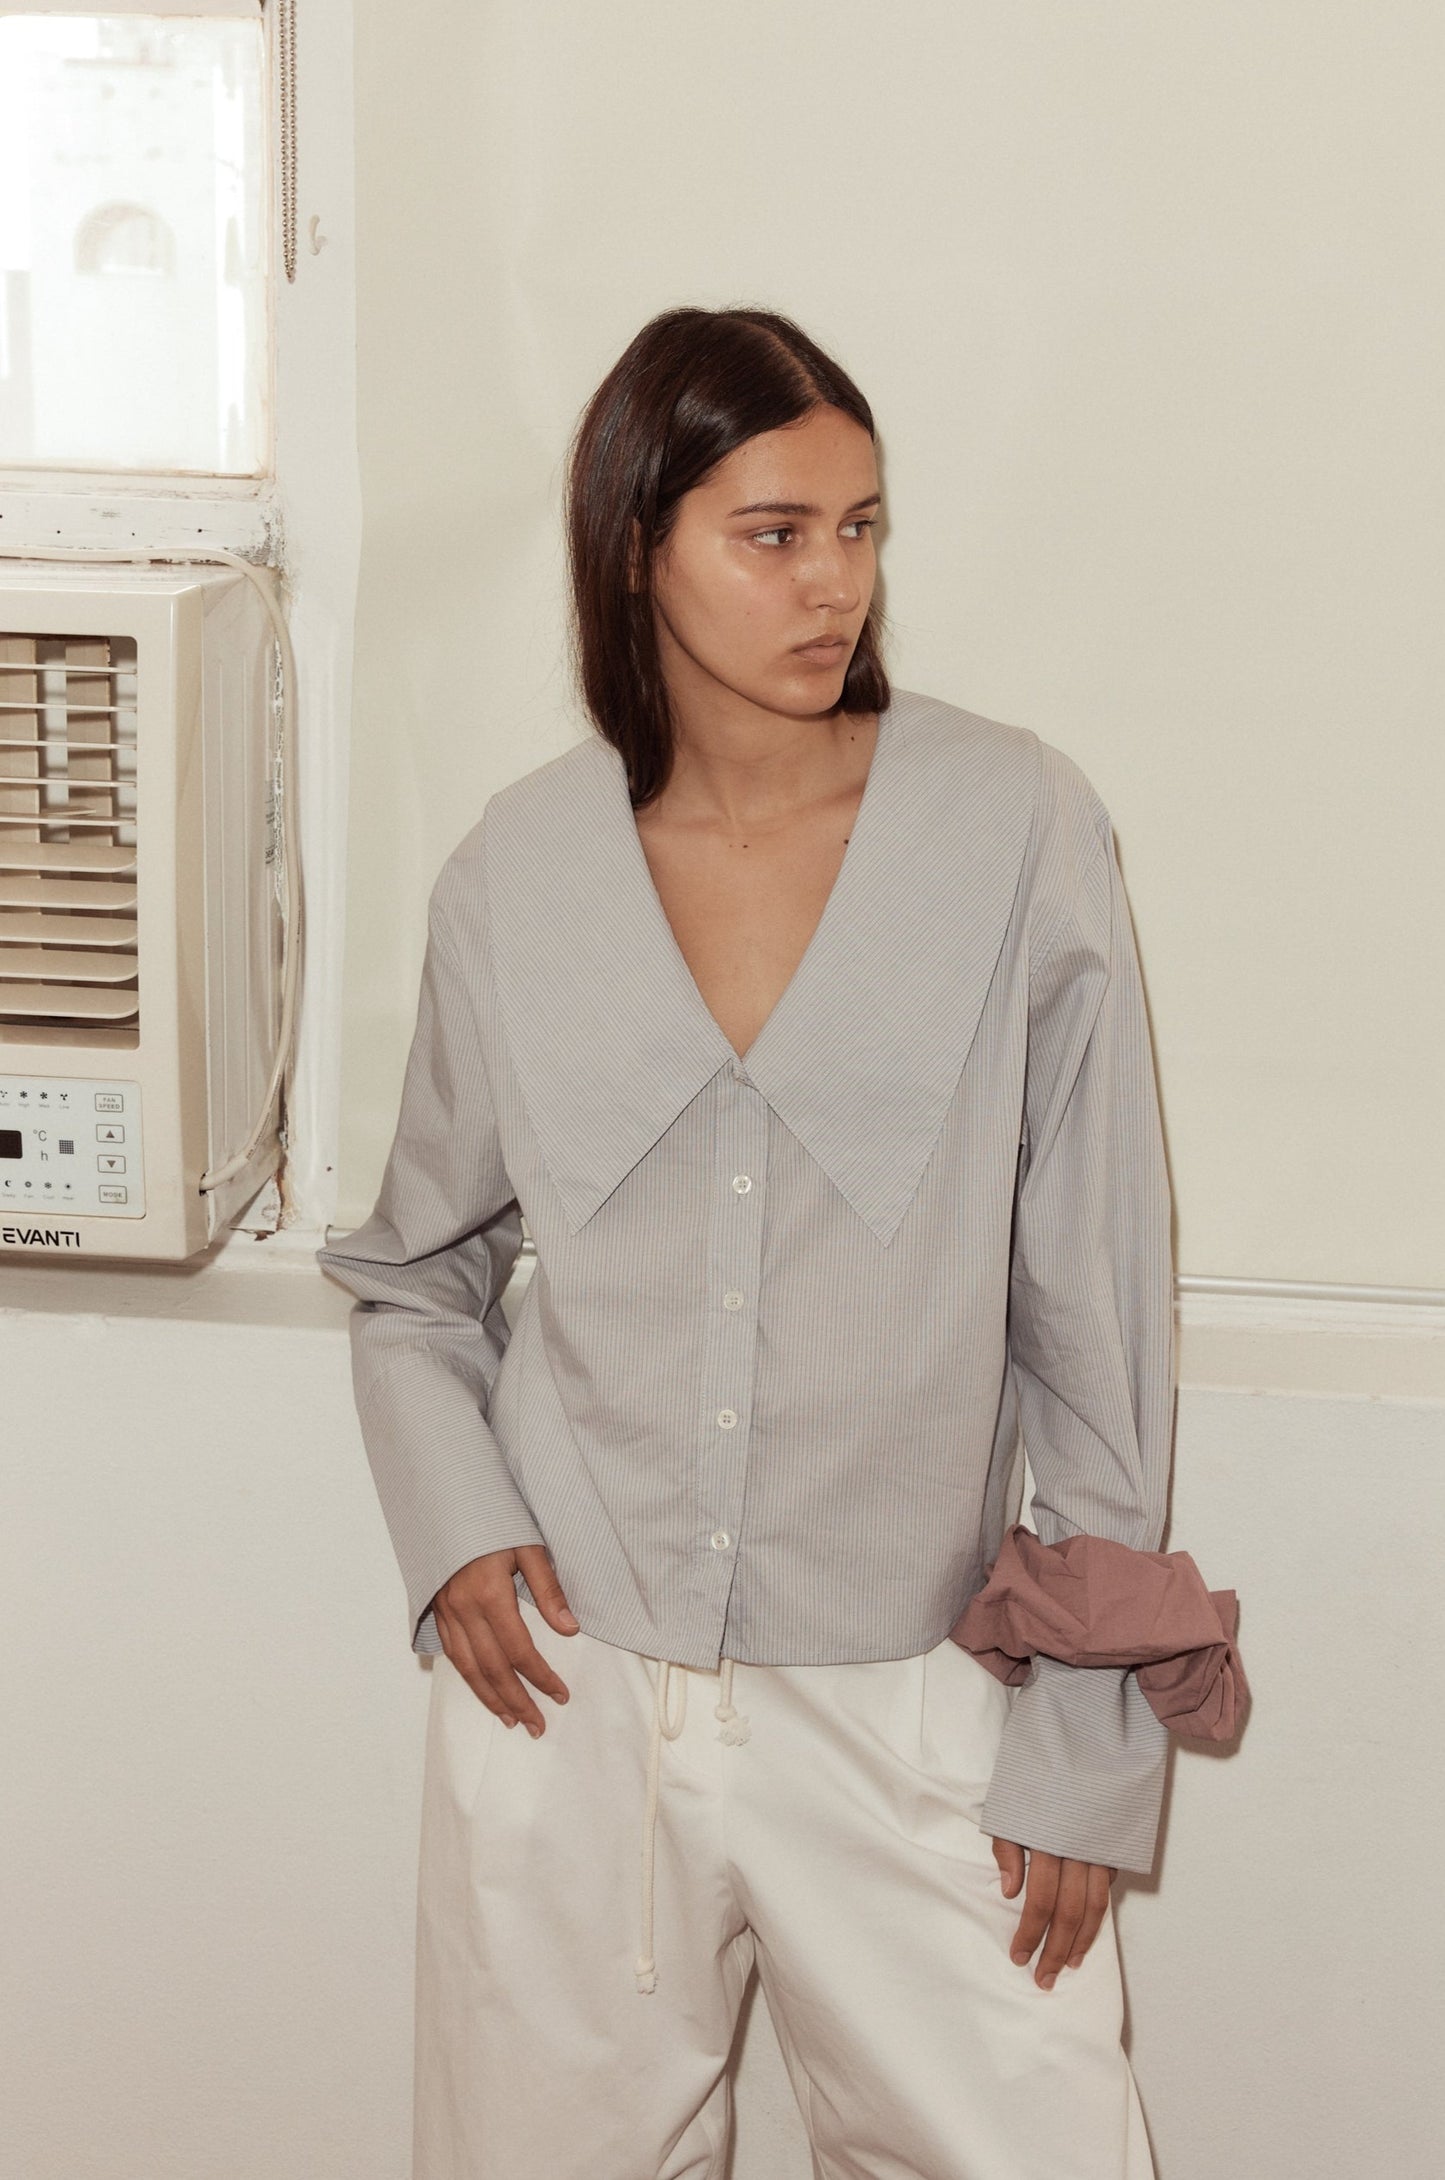 Female model wearing Oversized Collared Shirt - Dream Stripe by Deiji Studios against plain background